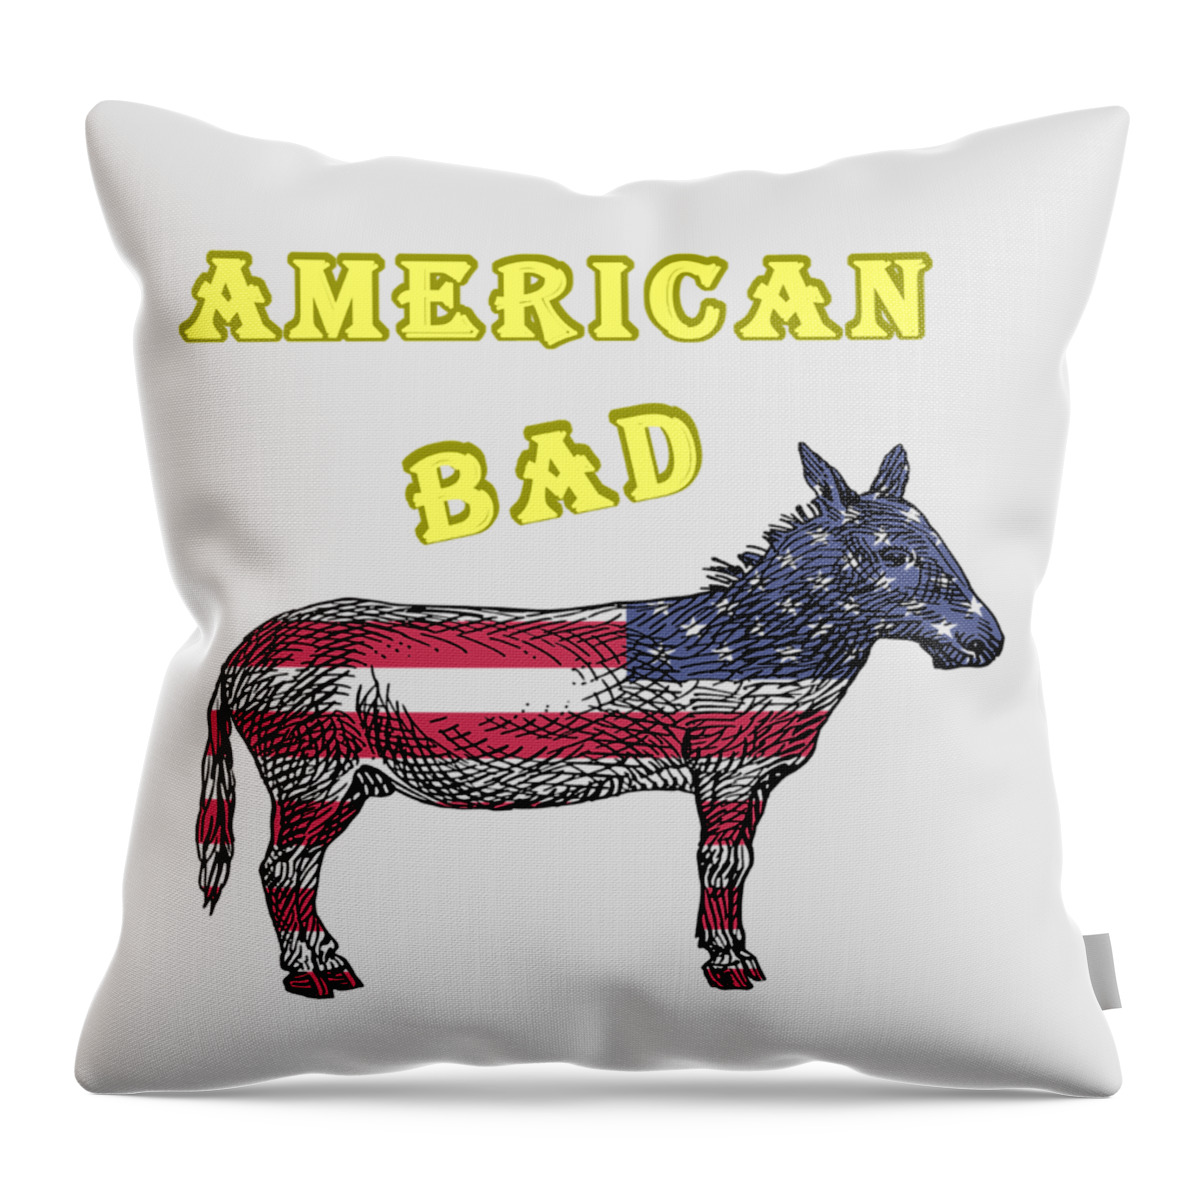 American Throw Pillow featuring the digital art American Bad Ass by John Da Graca